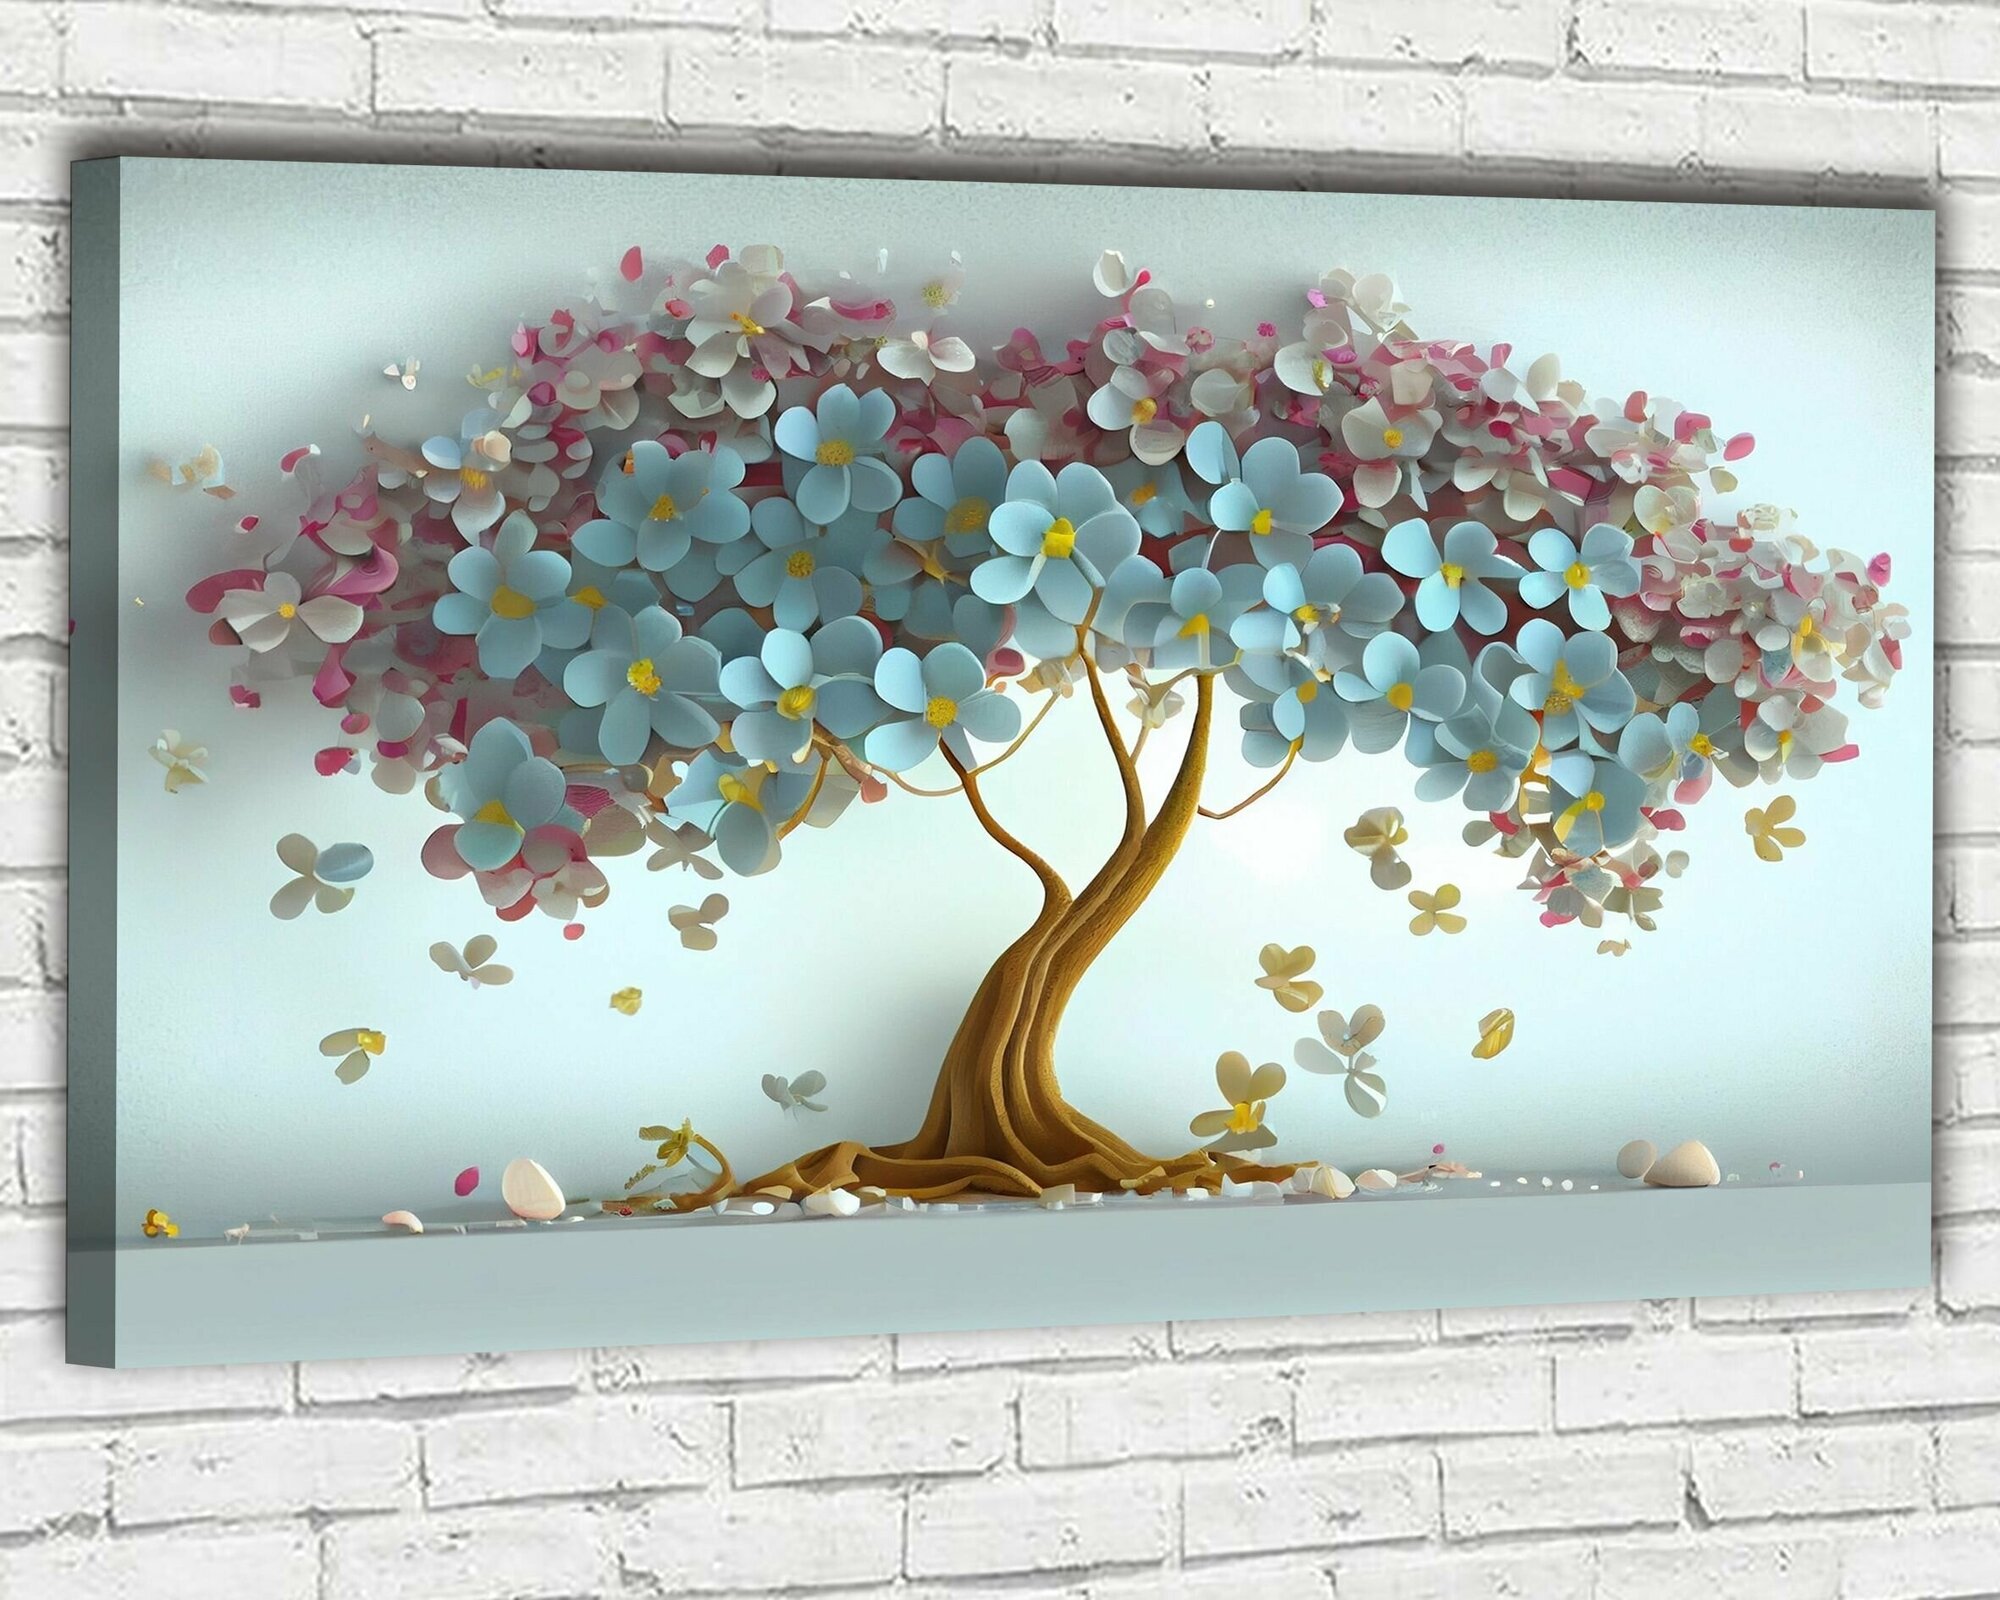 Картина интерьерная на стену ДоброДаров "Дерево на голубом" 60х100 см Ф0352